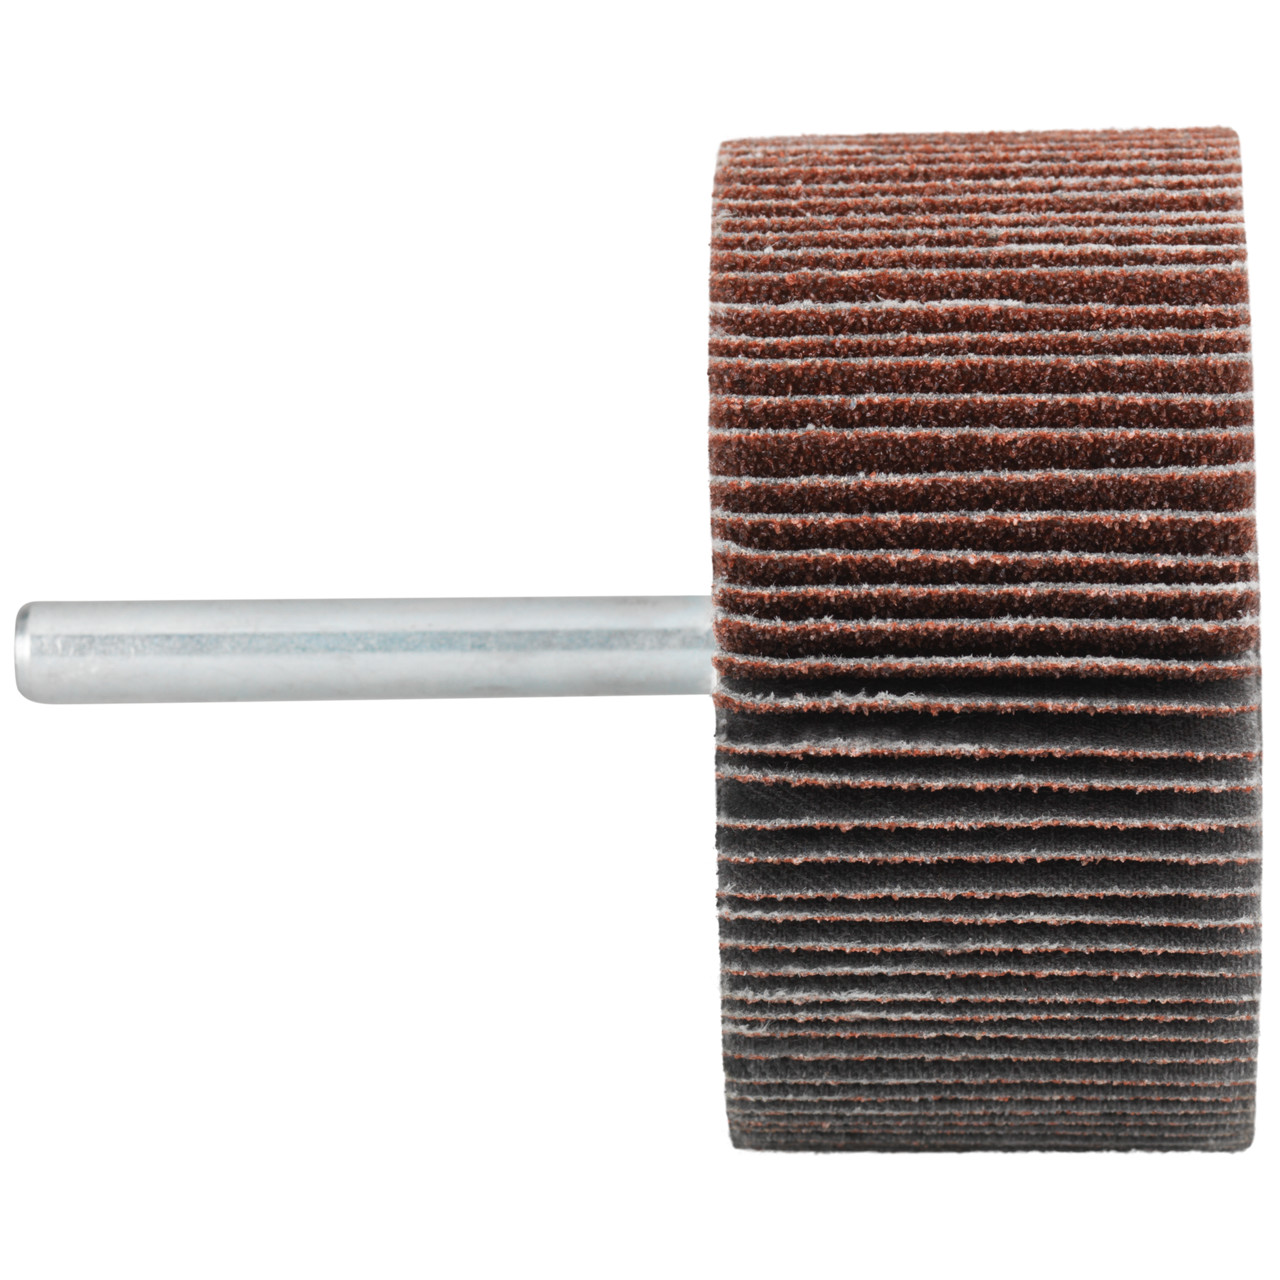 Tyrolit A-P01 C X Pennen DxD 50x30 Voor staal, roestvast staal en non-ferrometalen, P320, vorm: 52LA, Art. 910572